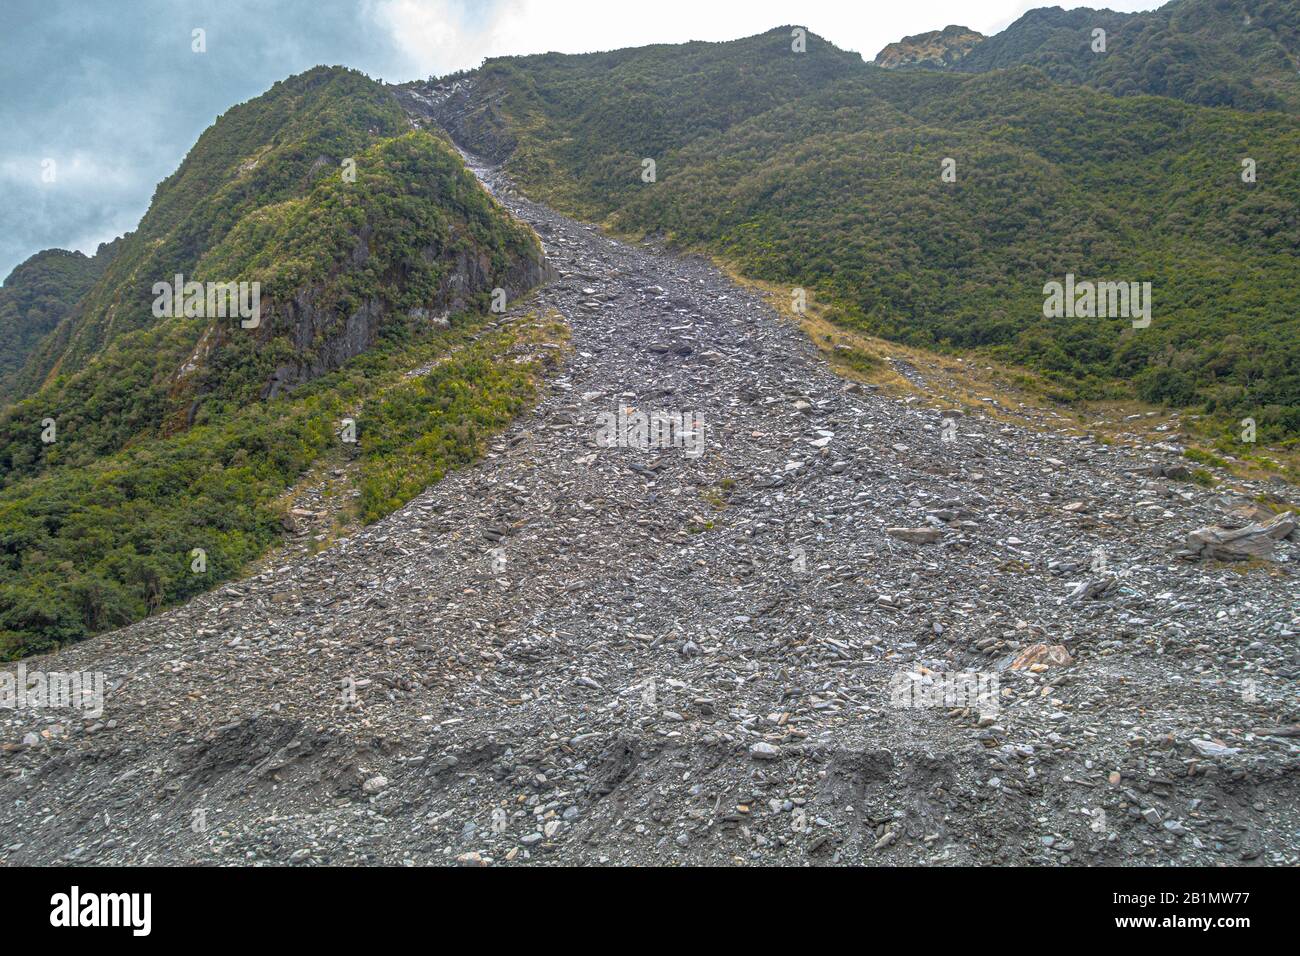 Massiver Erdrutsch von Felsen am Fox-Gletscher, Neuseeland. Lizenzfreies Foto. Stockfoto